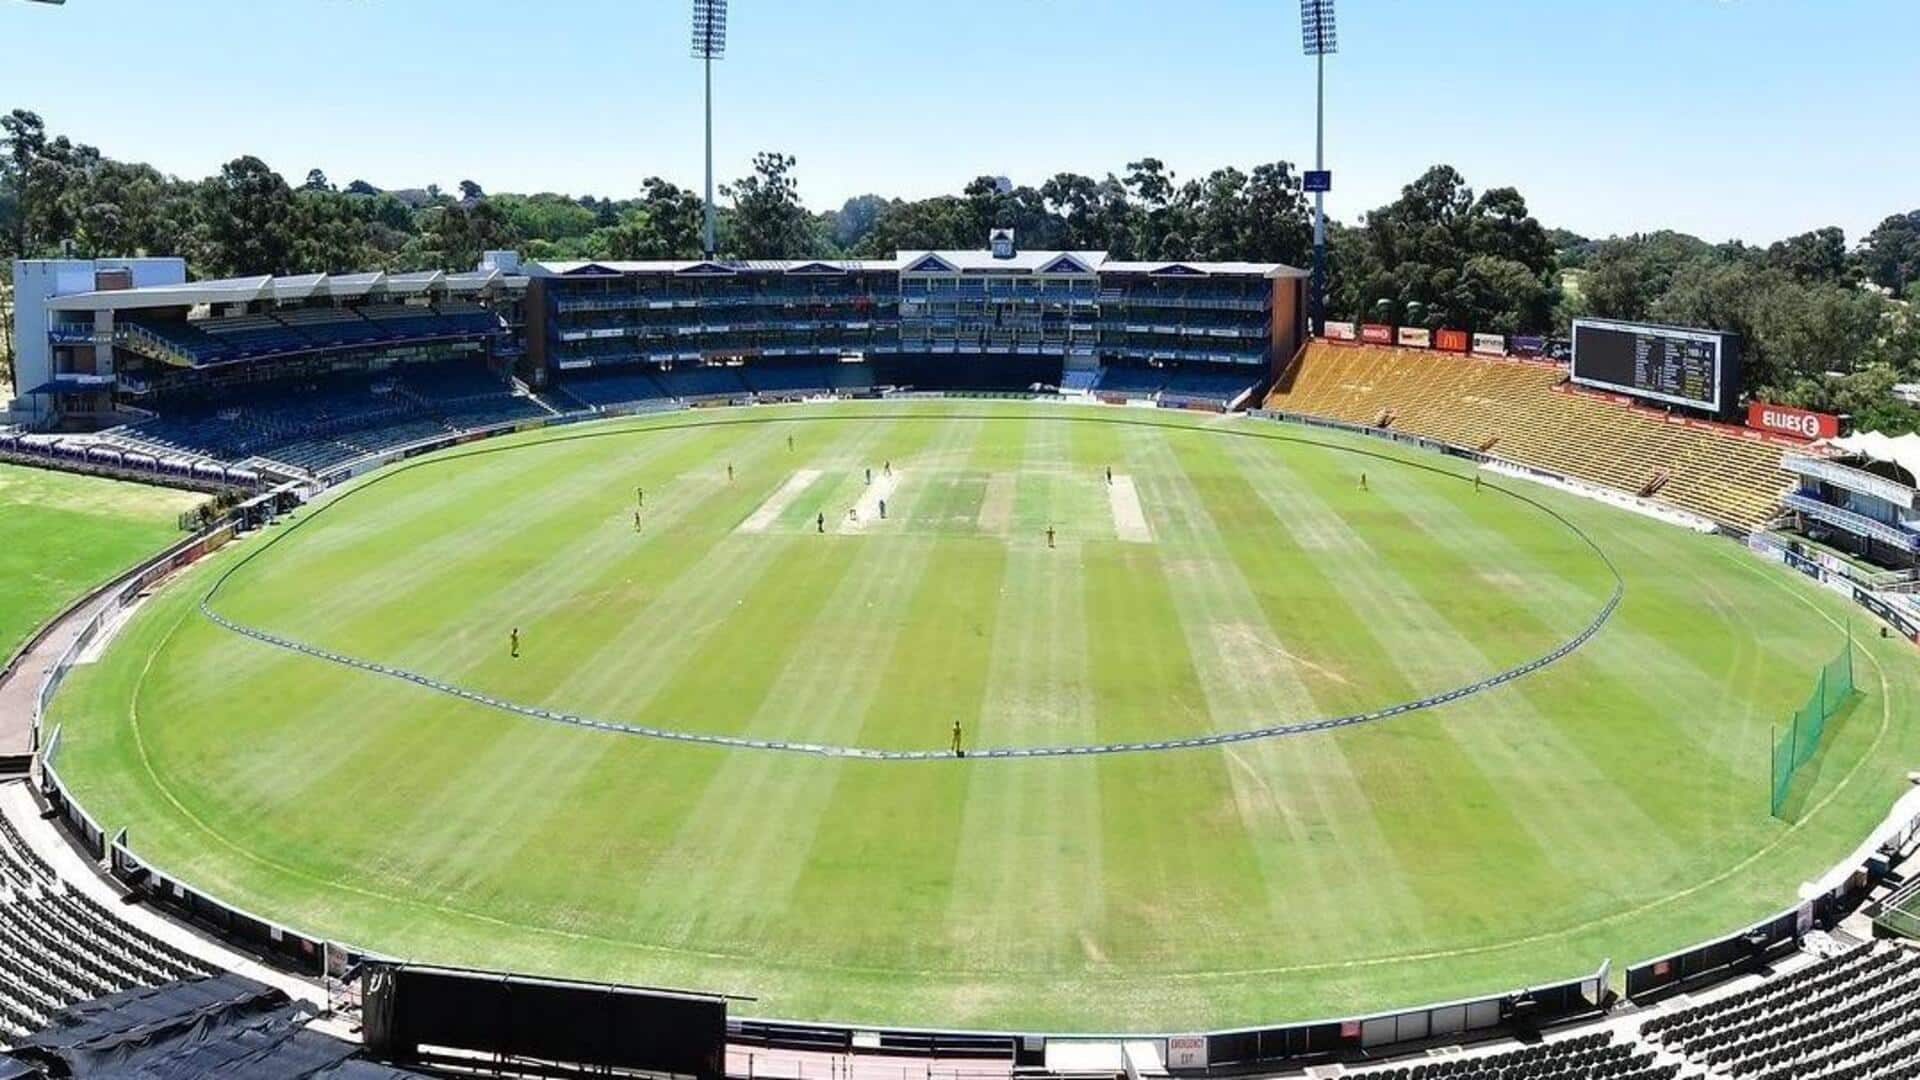 दक्षिण अफ्रीका बनाम भारत, तीसरा टी-20: न्यू वांडरर्स स्टेडियम की पिच रिपोर्ट और रोचक आंकड़े